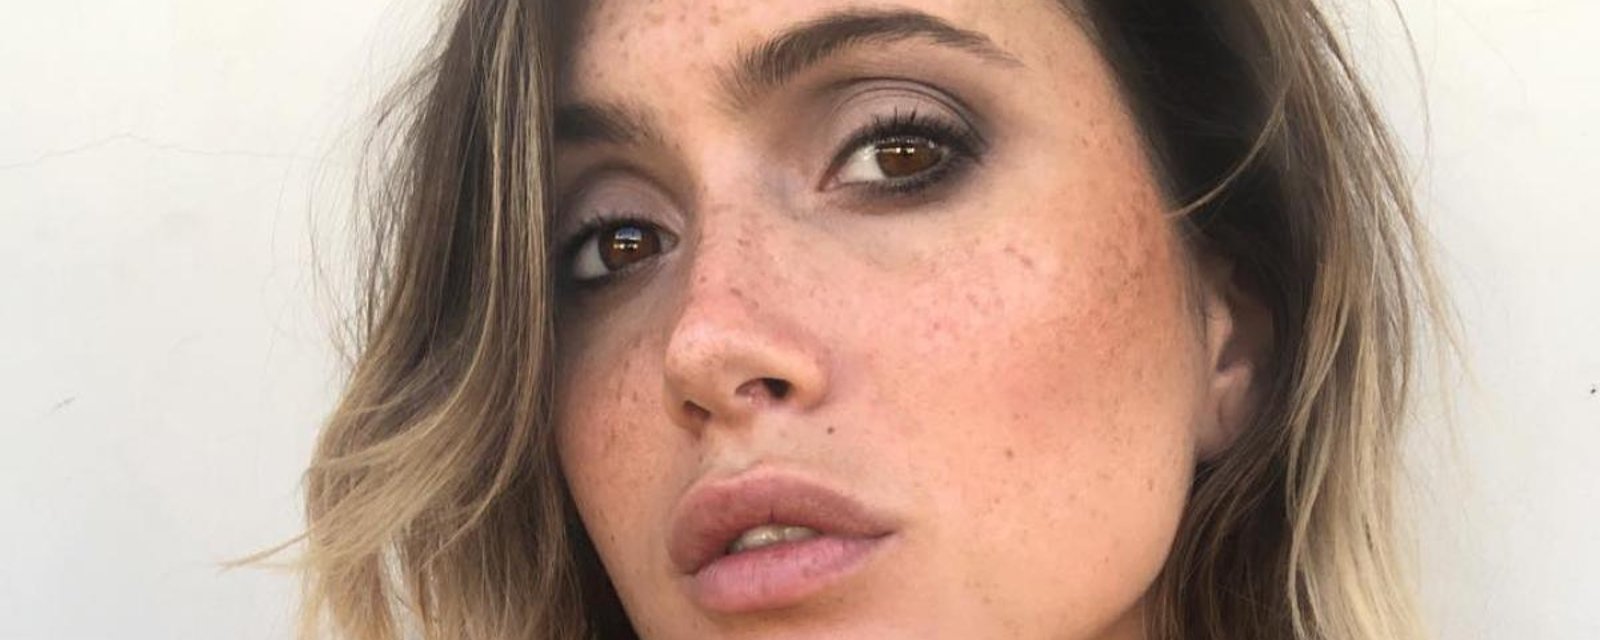 Lysandre Nadeau pose en tenue d'Ève sur Instagram et annonce qu’elle est de retour sur Onlyfans